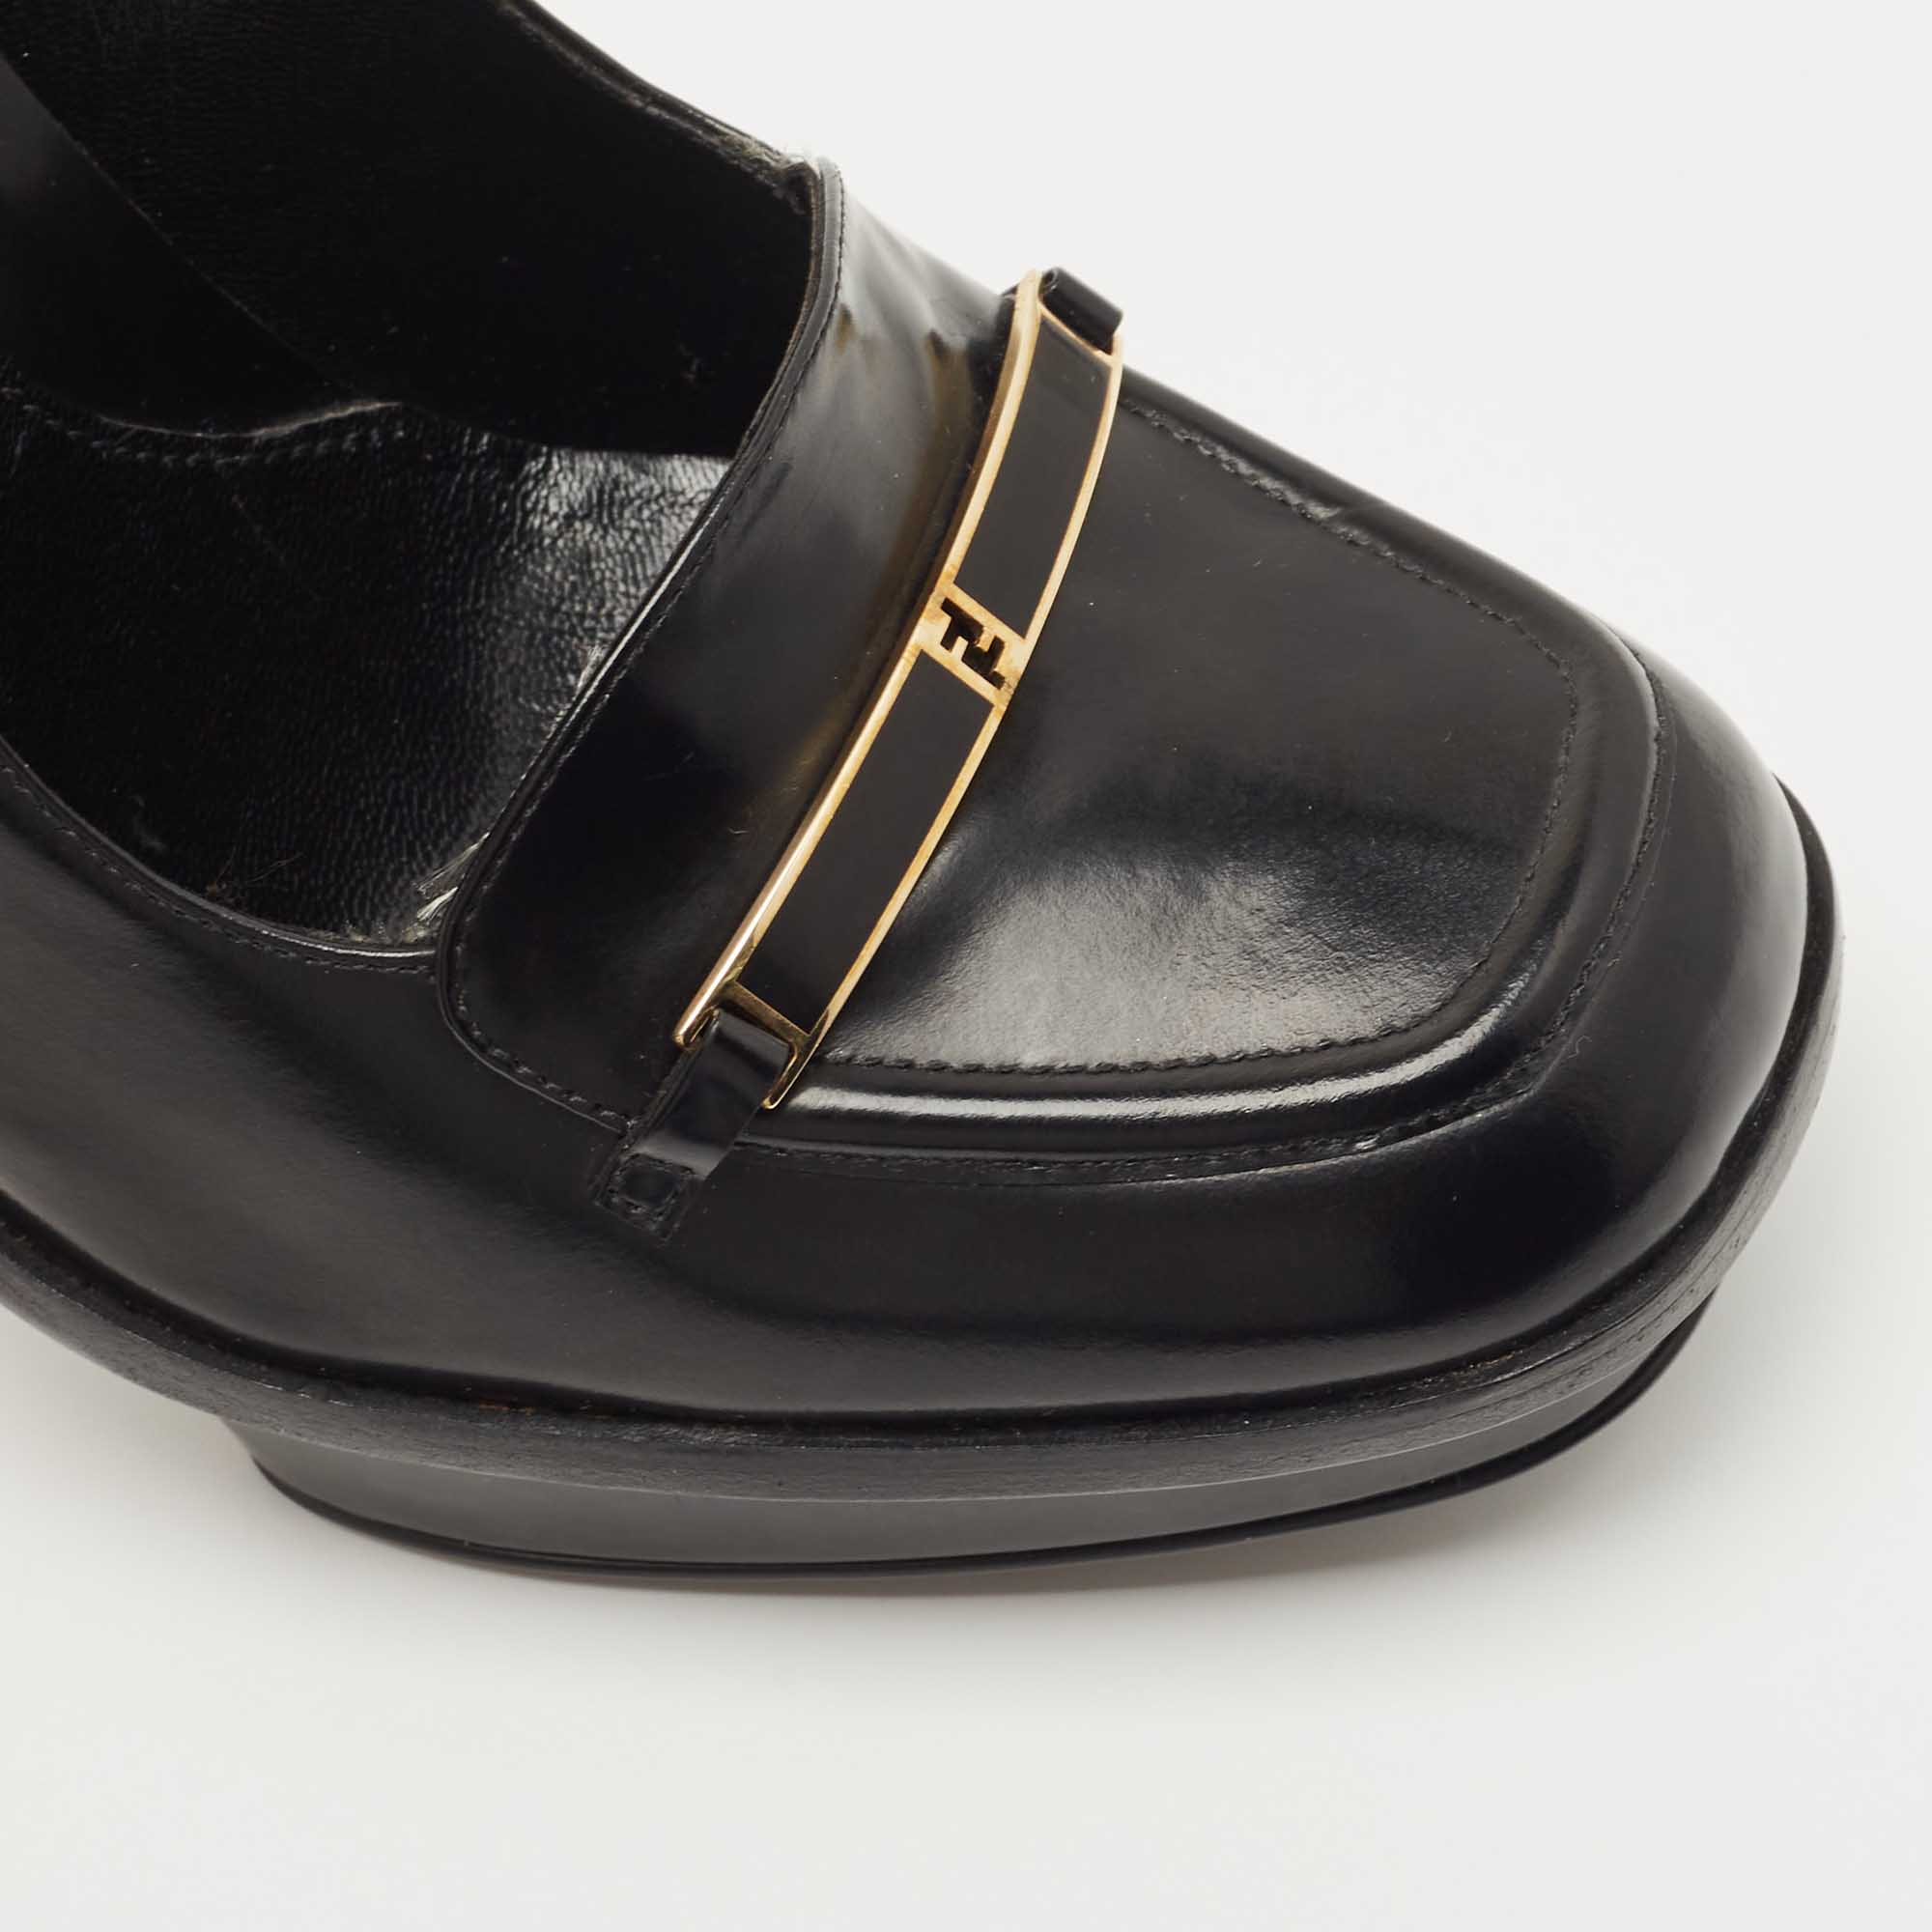 Fendi Black Leather Logo Loafer Pumps Size 38.5